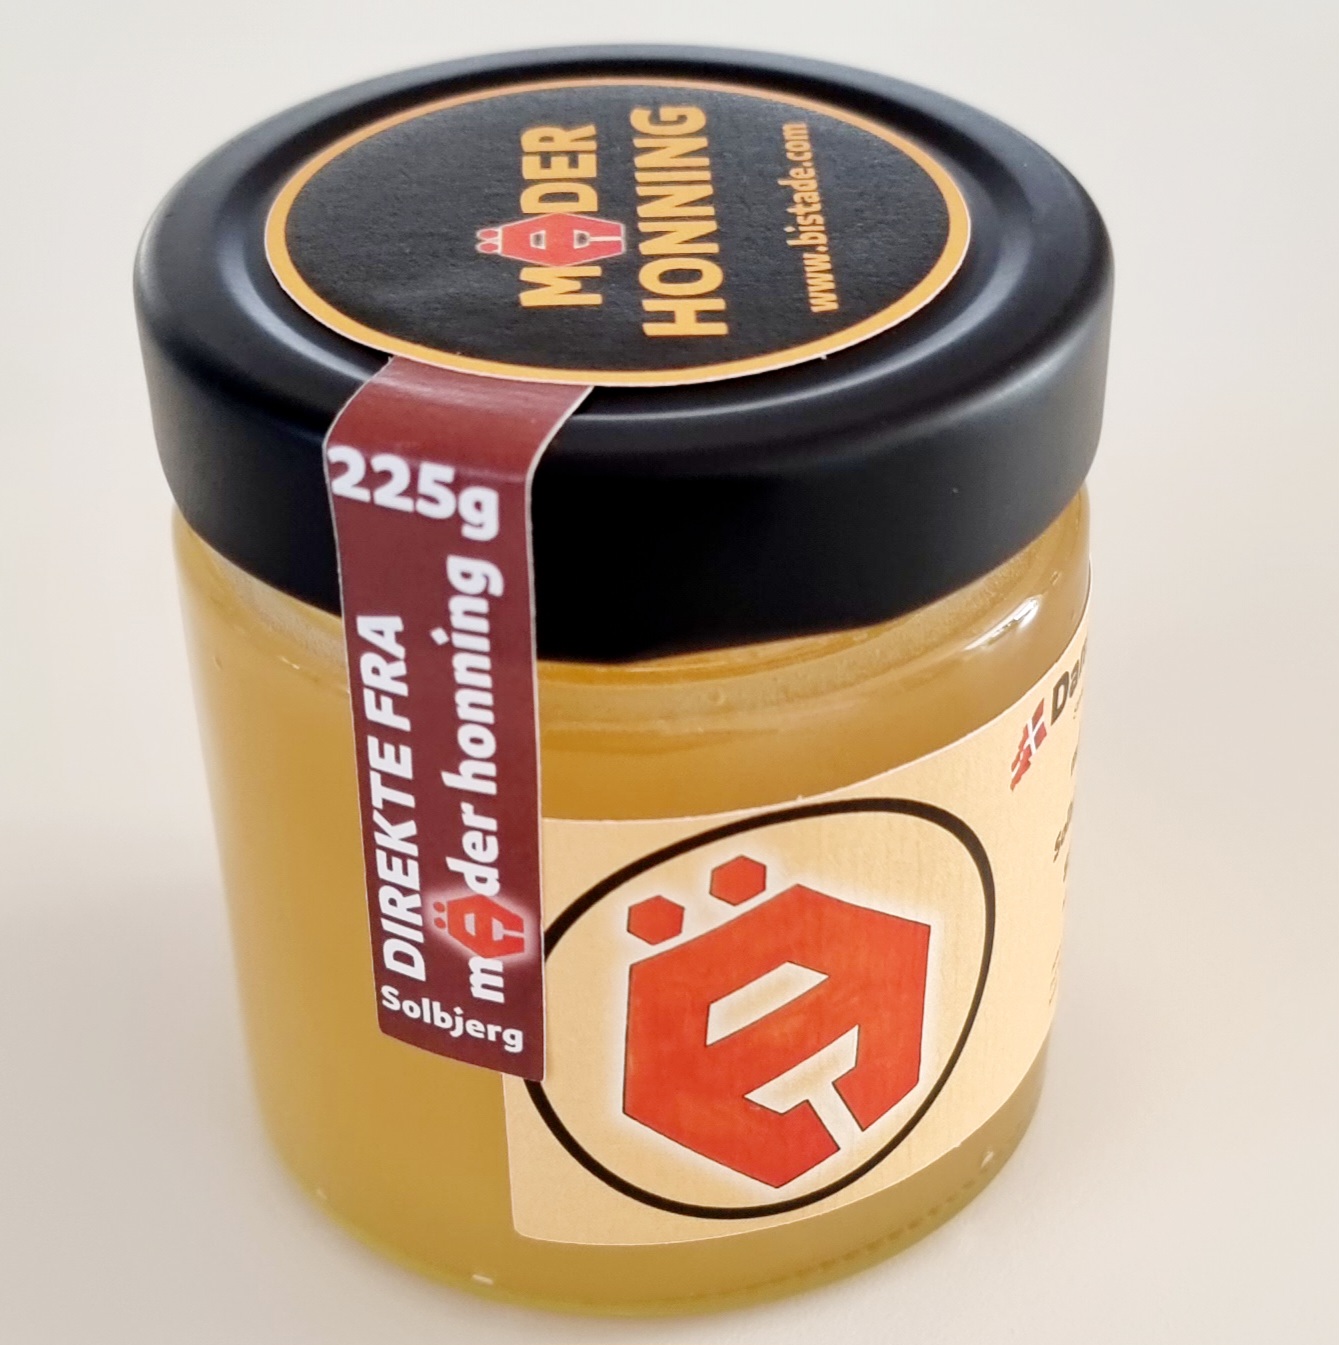 Dansk honning avlet i egen bigård. Mäder Honning 225g Forårshonning fra Solbjerg.